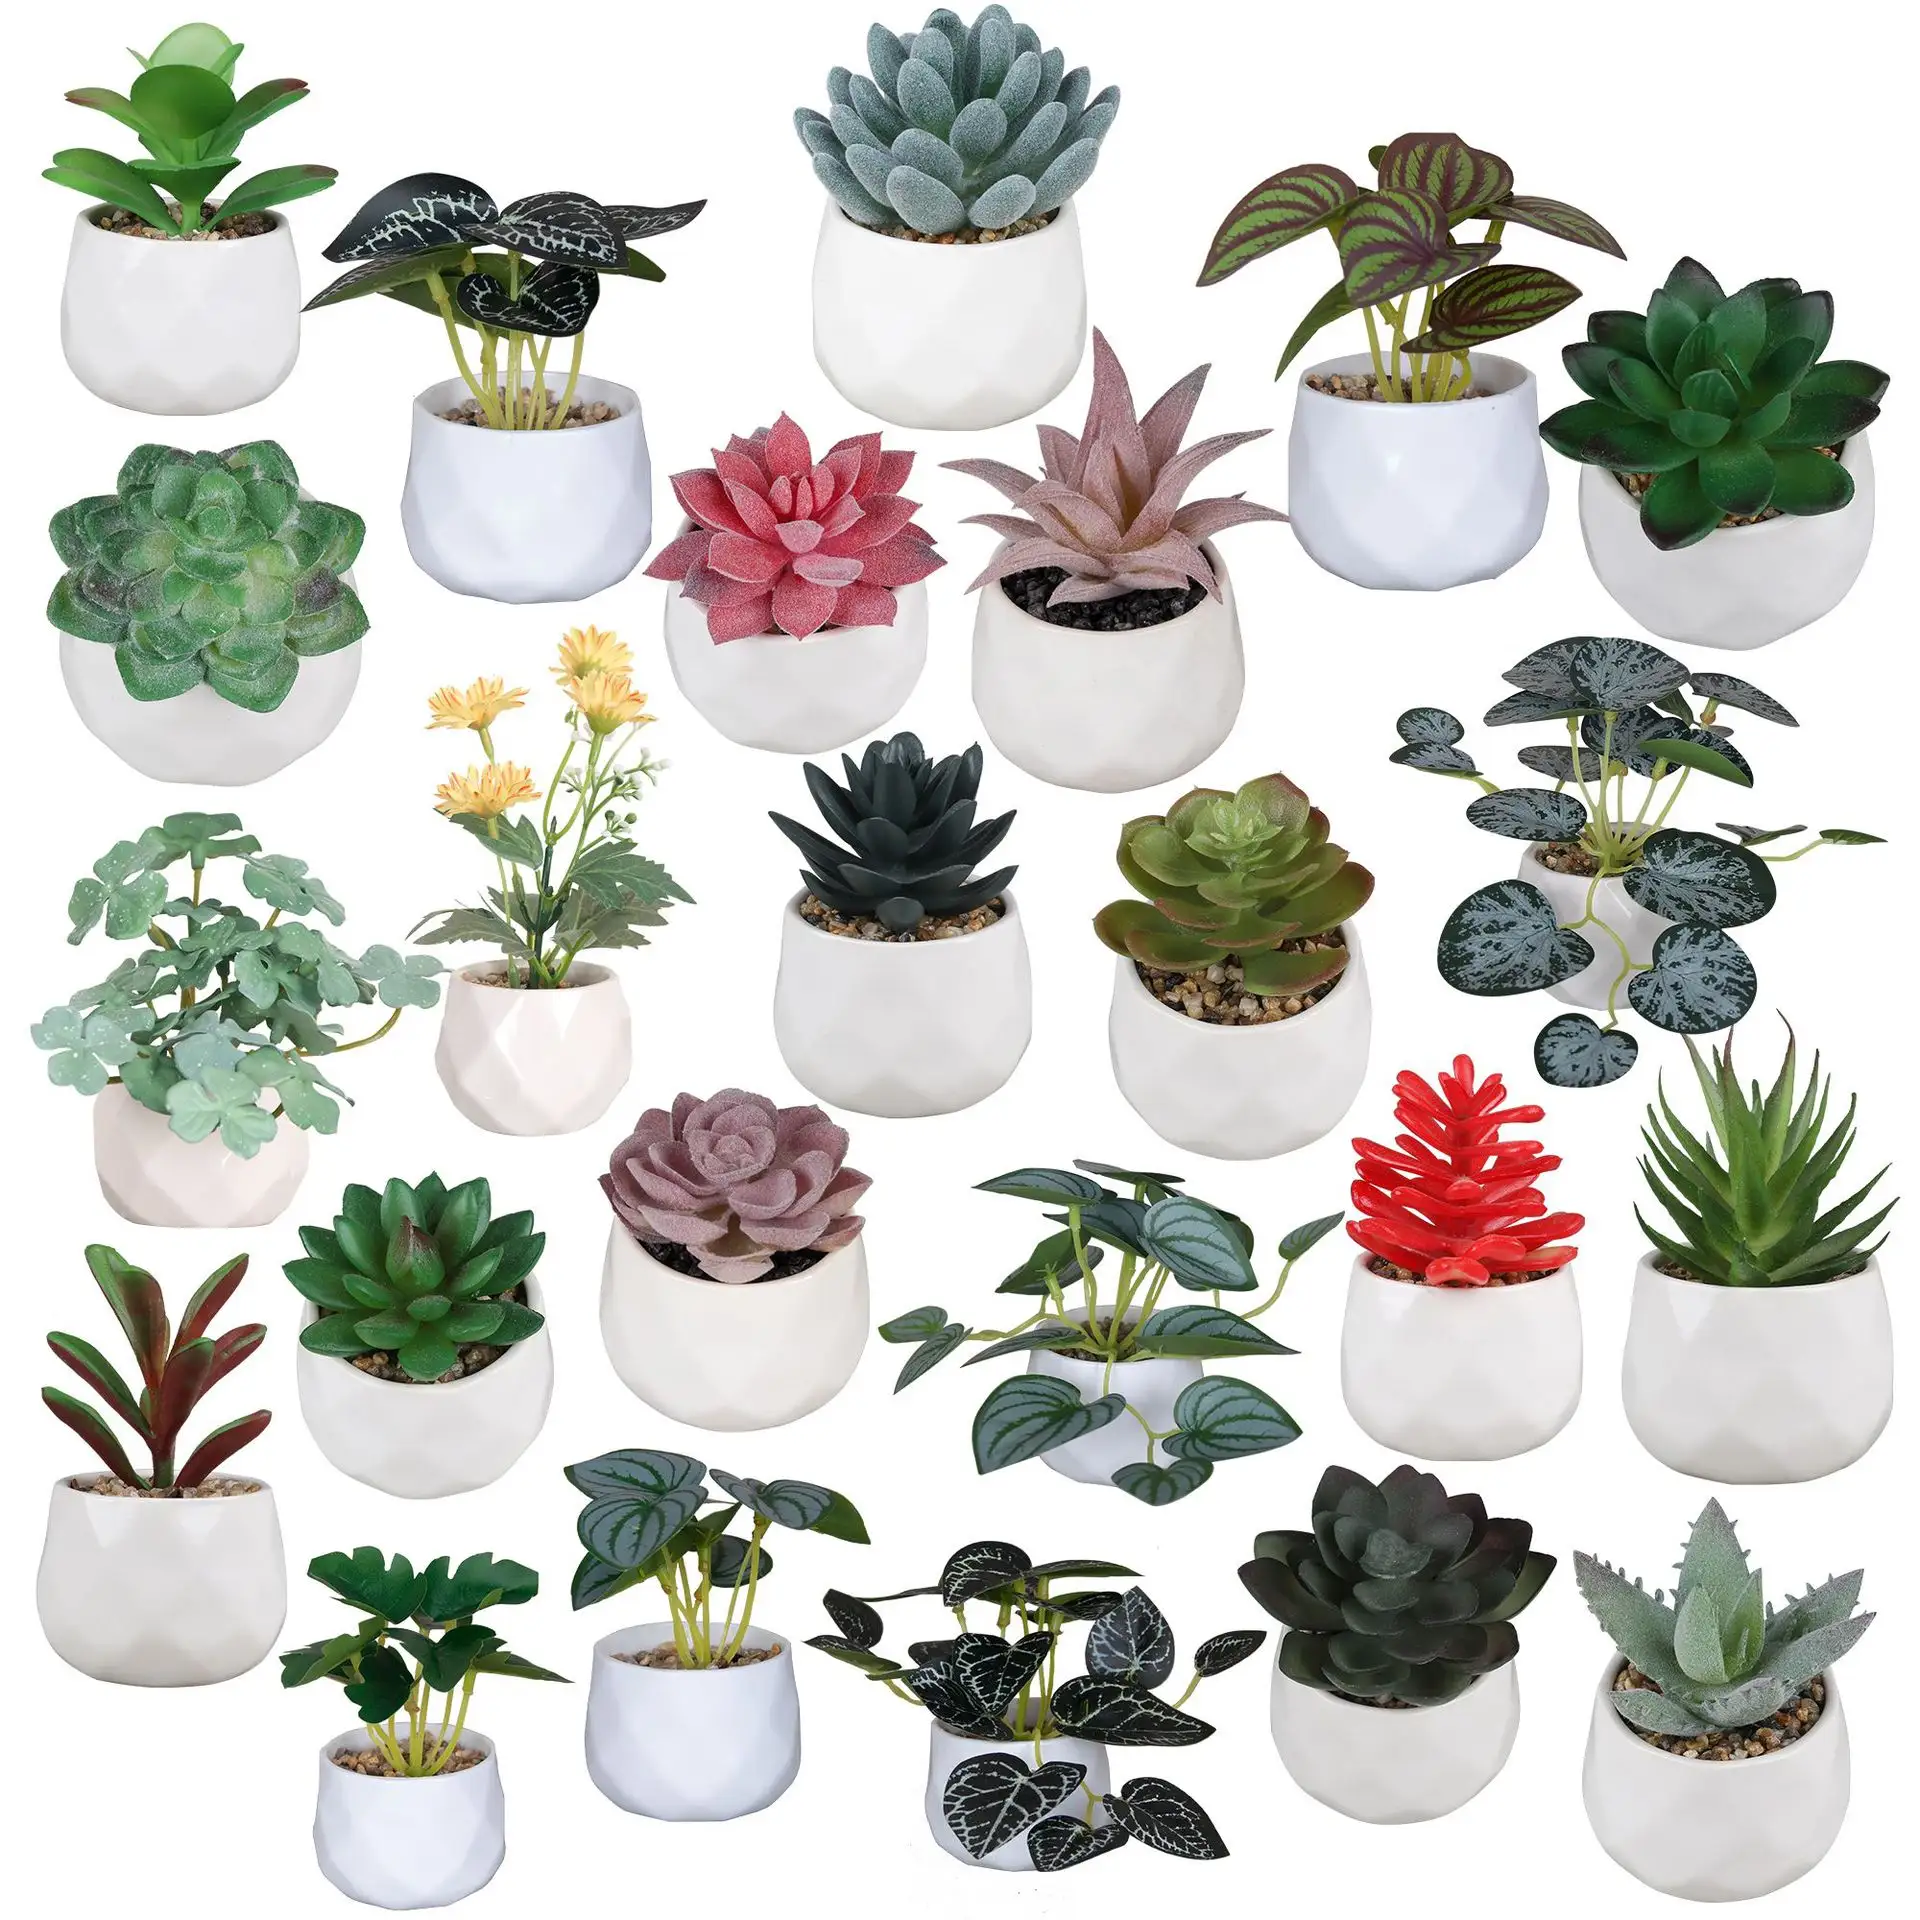 Großhandel Hochwertige Sukkulenten Pflanzen Künstlich In Mini Weiß Keramik Töpfe Kleine Gefälschte Sukkulenten Pflanzen